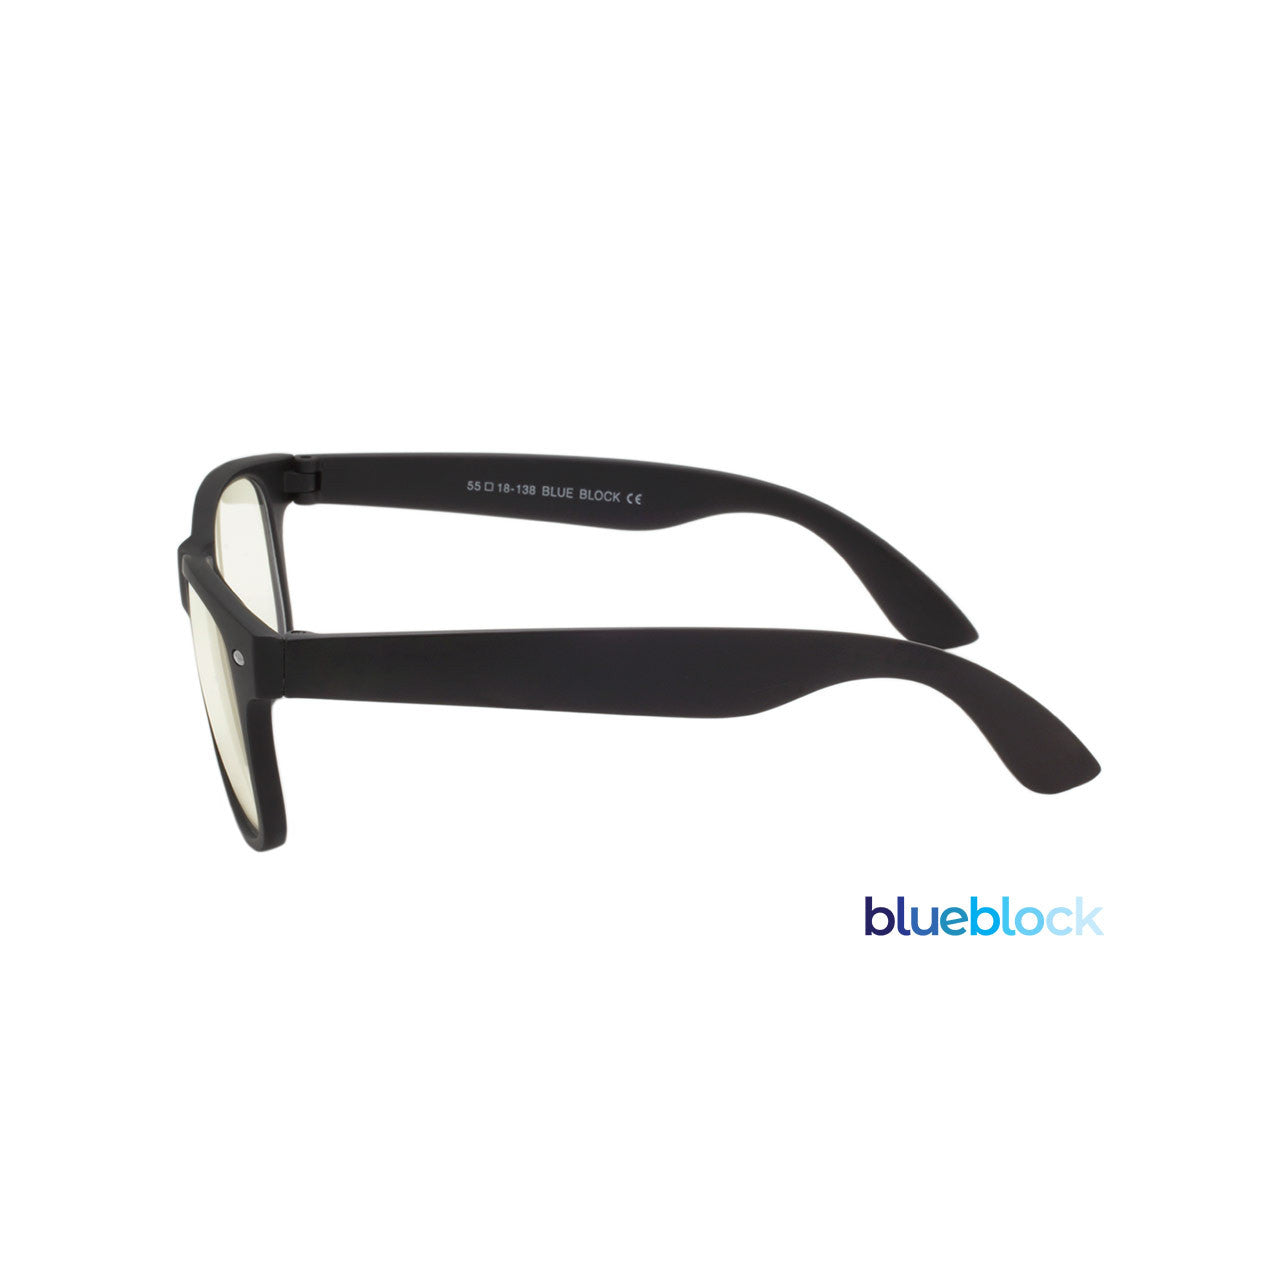 Shark Eyes Blue Light Glasses - Unisex, 2 Pack